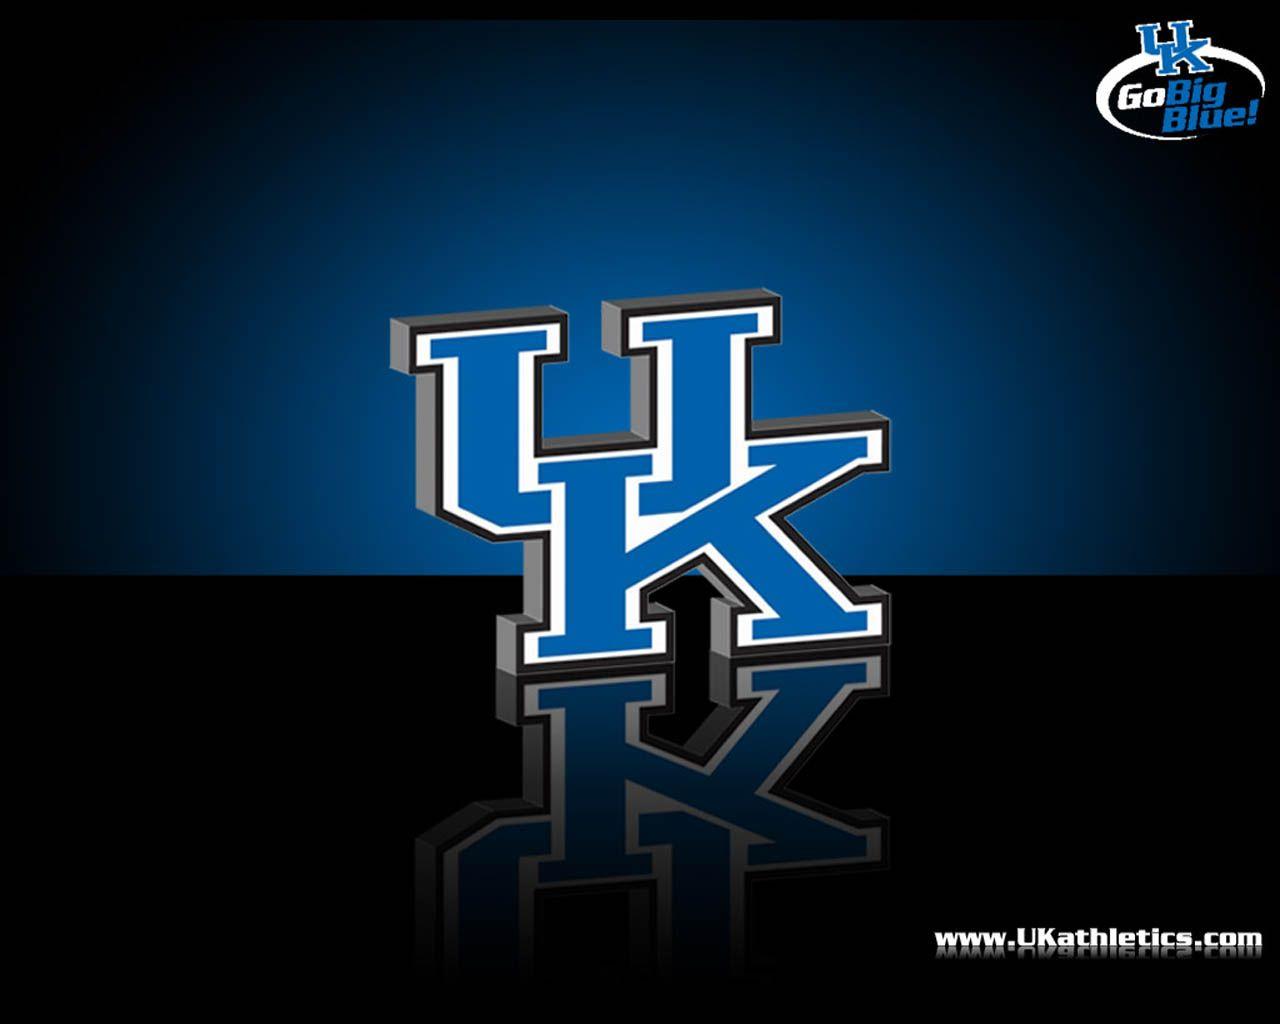 Kentucky Wildcats Wallpapers Download Free  PixelsTalkNet